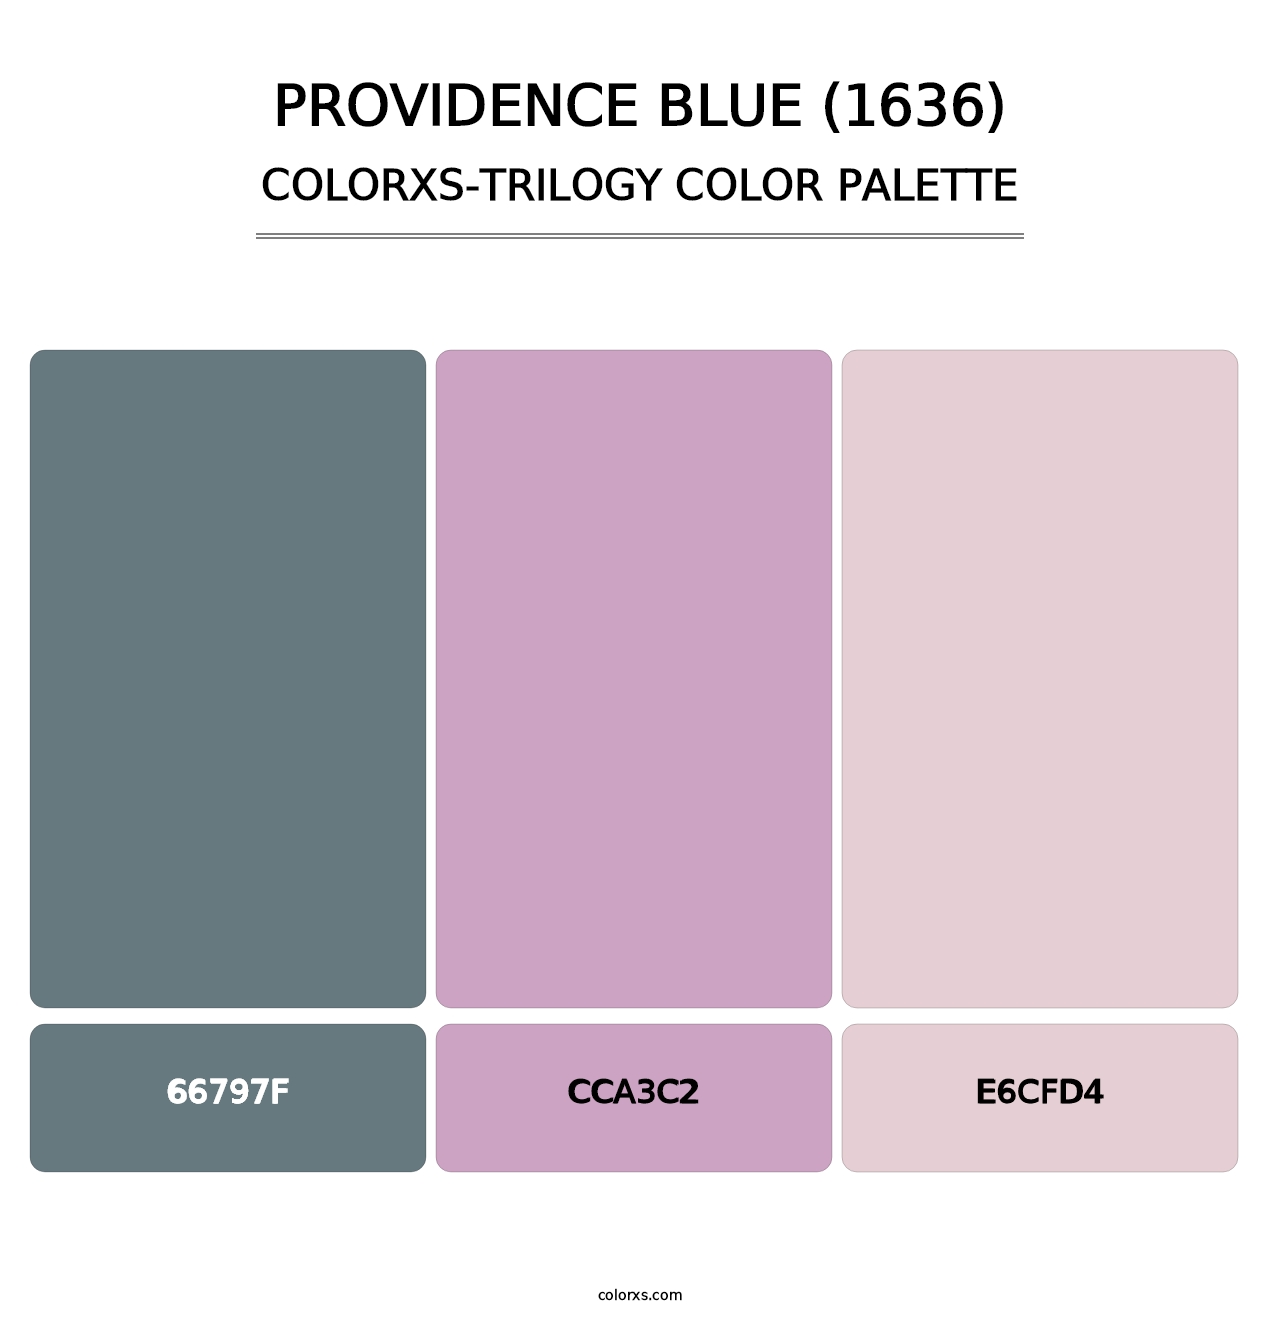 Providence Blue (1636) - Colorxs Trilogy Palette